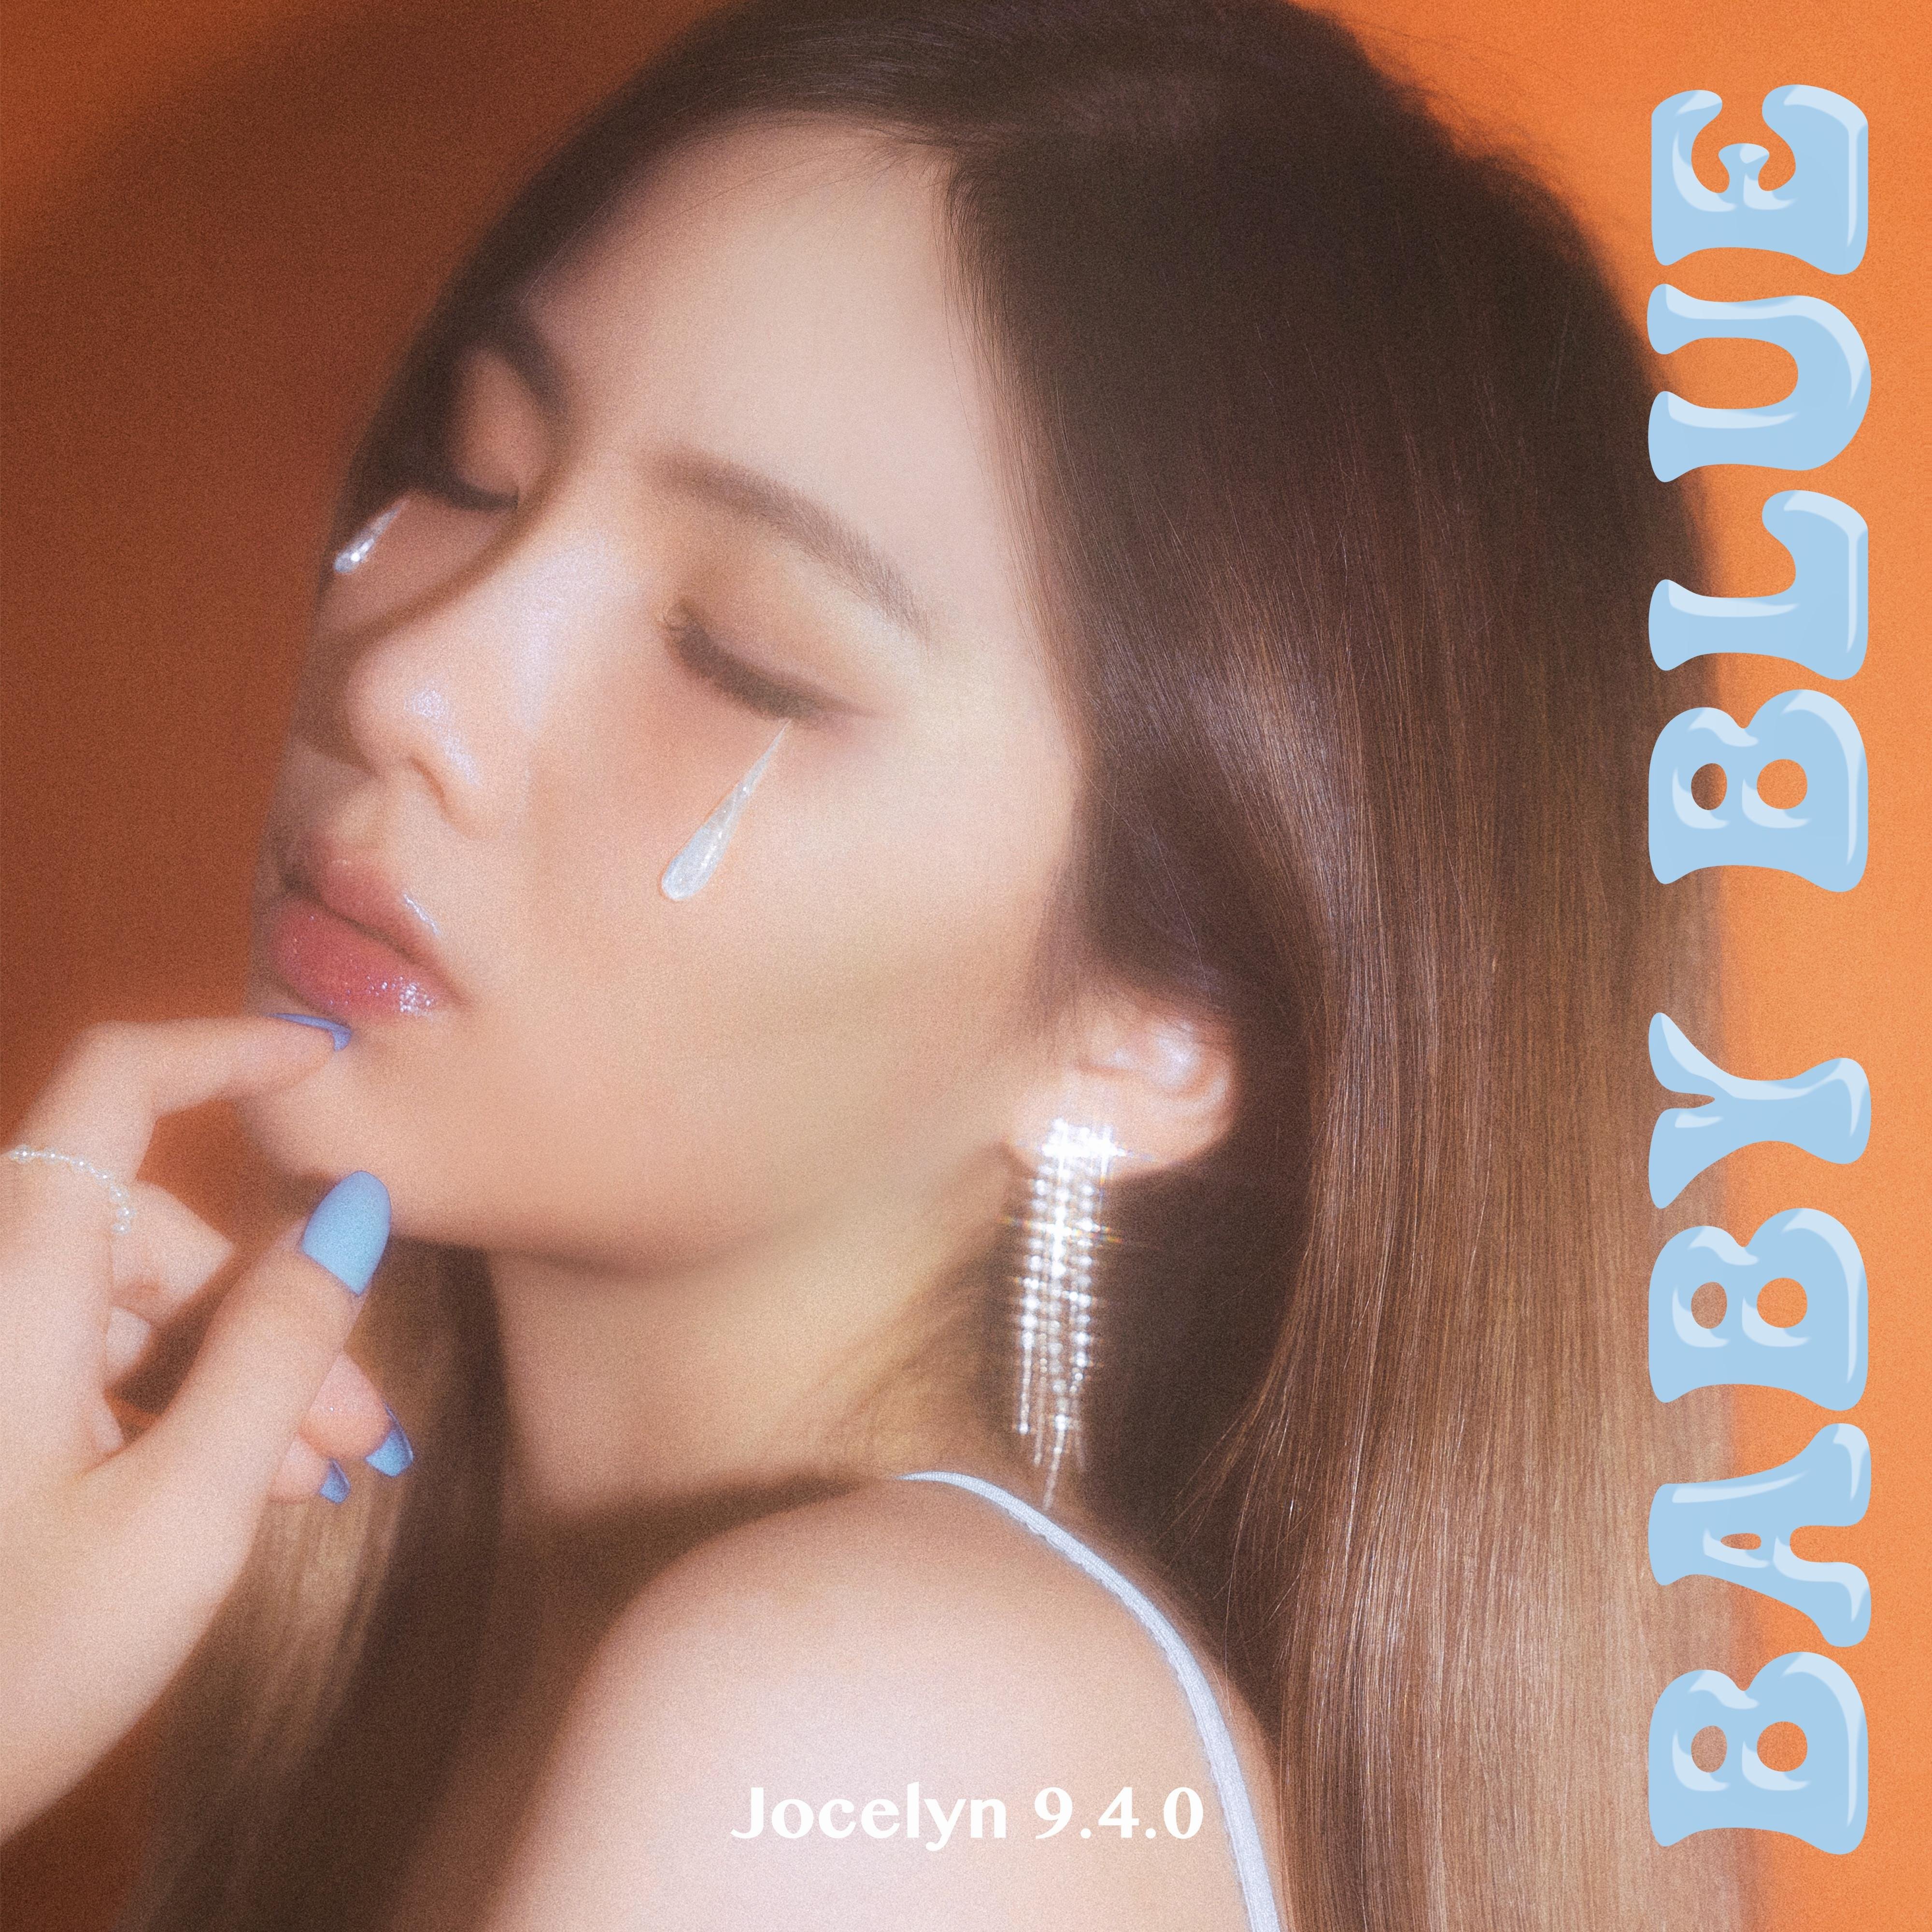 Jocelyn 9.4.0《Baby Blue》[FLAC/MP3-320K]